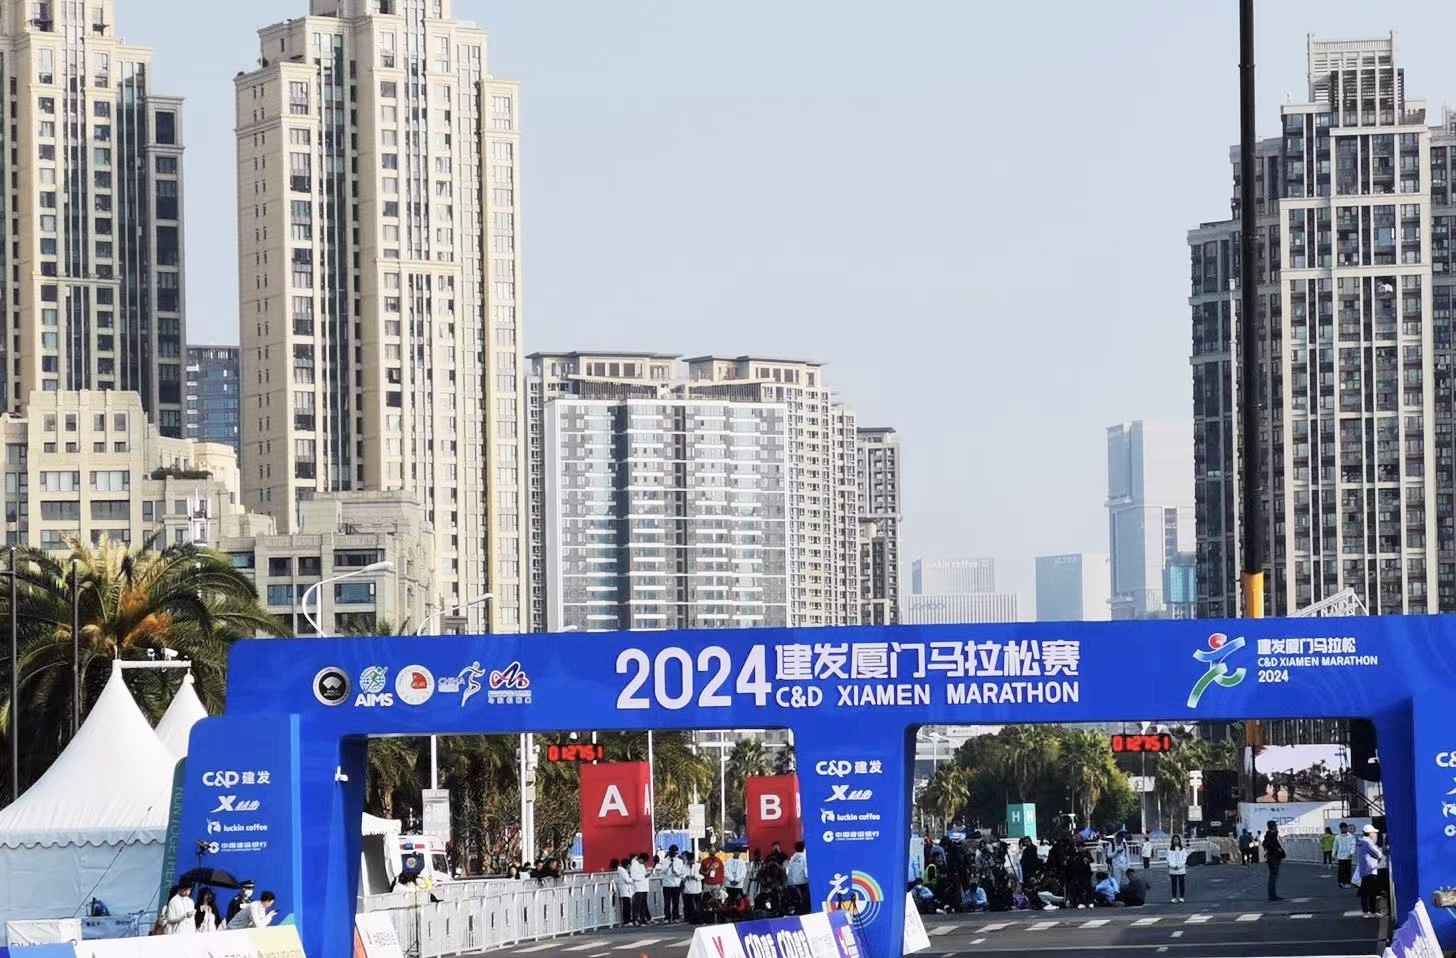 2024 Xiamen Marathon: Beoka използва професионално оборудване за рехабилитация, за да помогне на спортистите при възстановяване след състезание